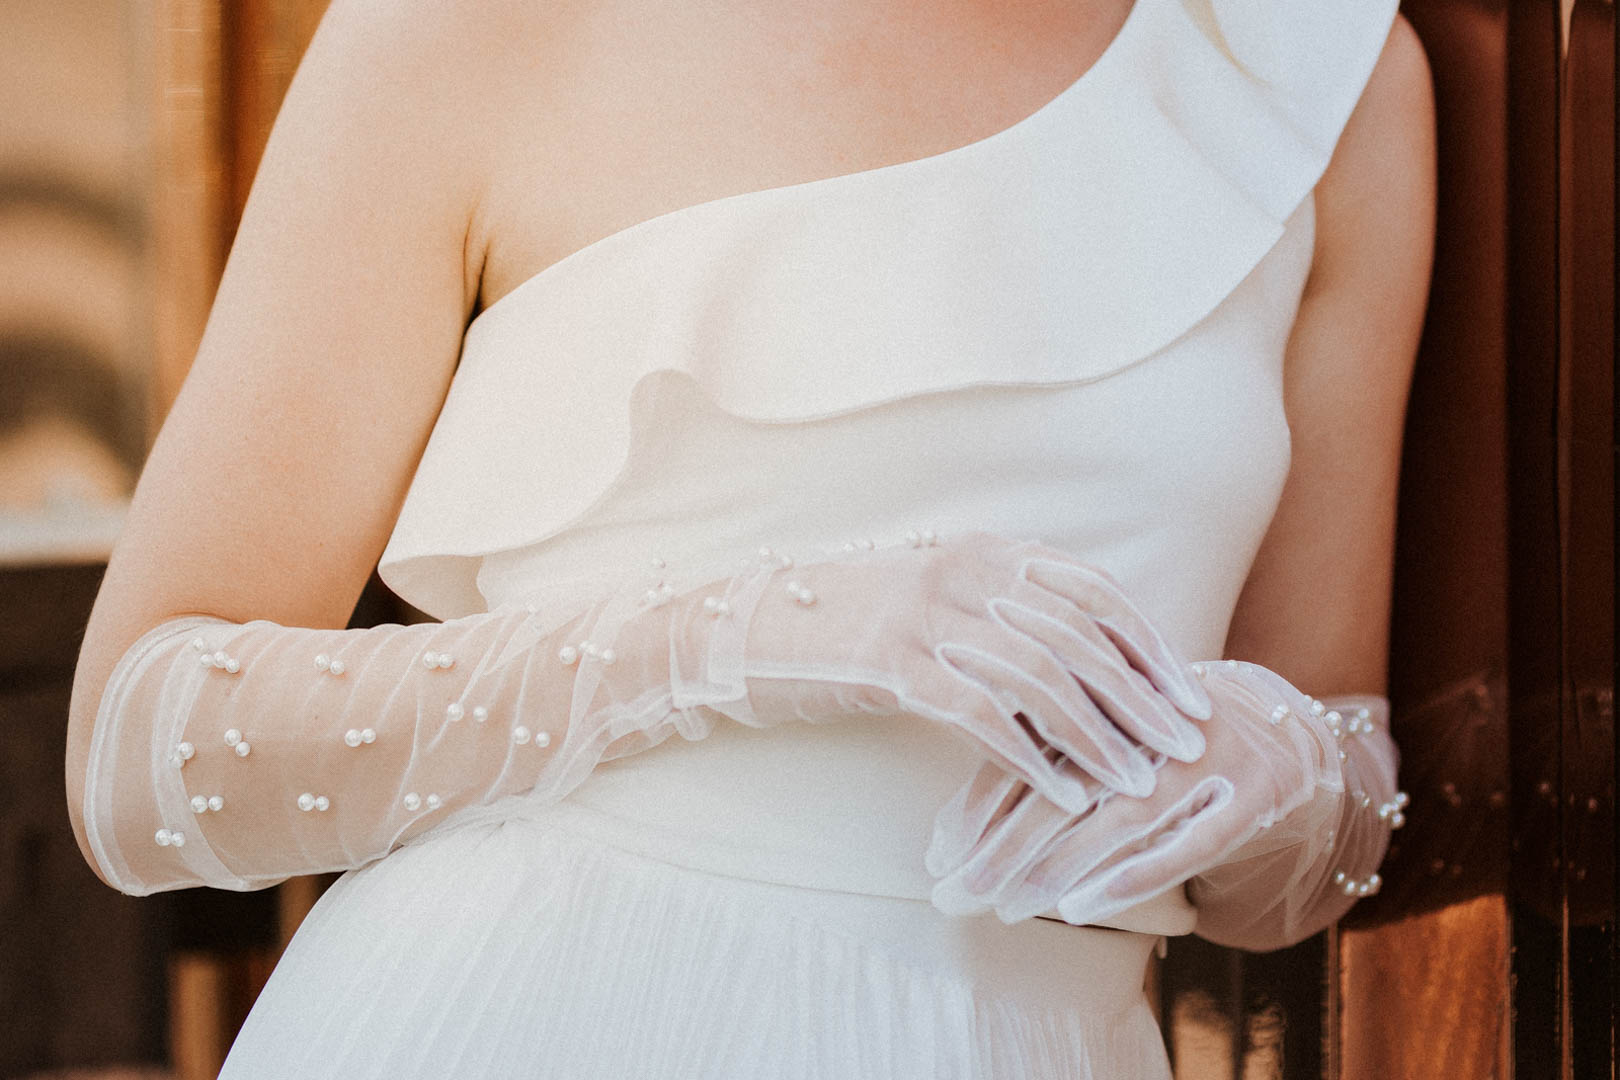 noni Brautmode, Grecia – One-Shoulder Braut Top mit Julica Plisseerock, Outdoor-Aufnahme, blondes Model, Nahaufnahme mit Top und Perlenhandschuhen